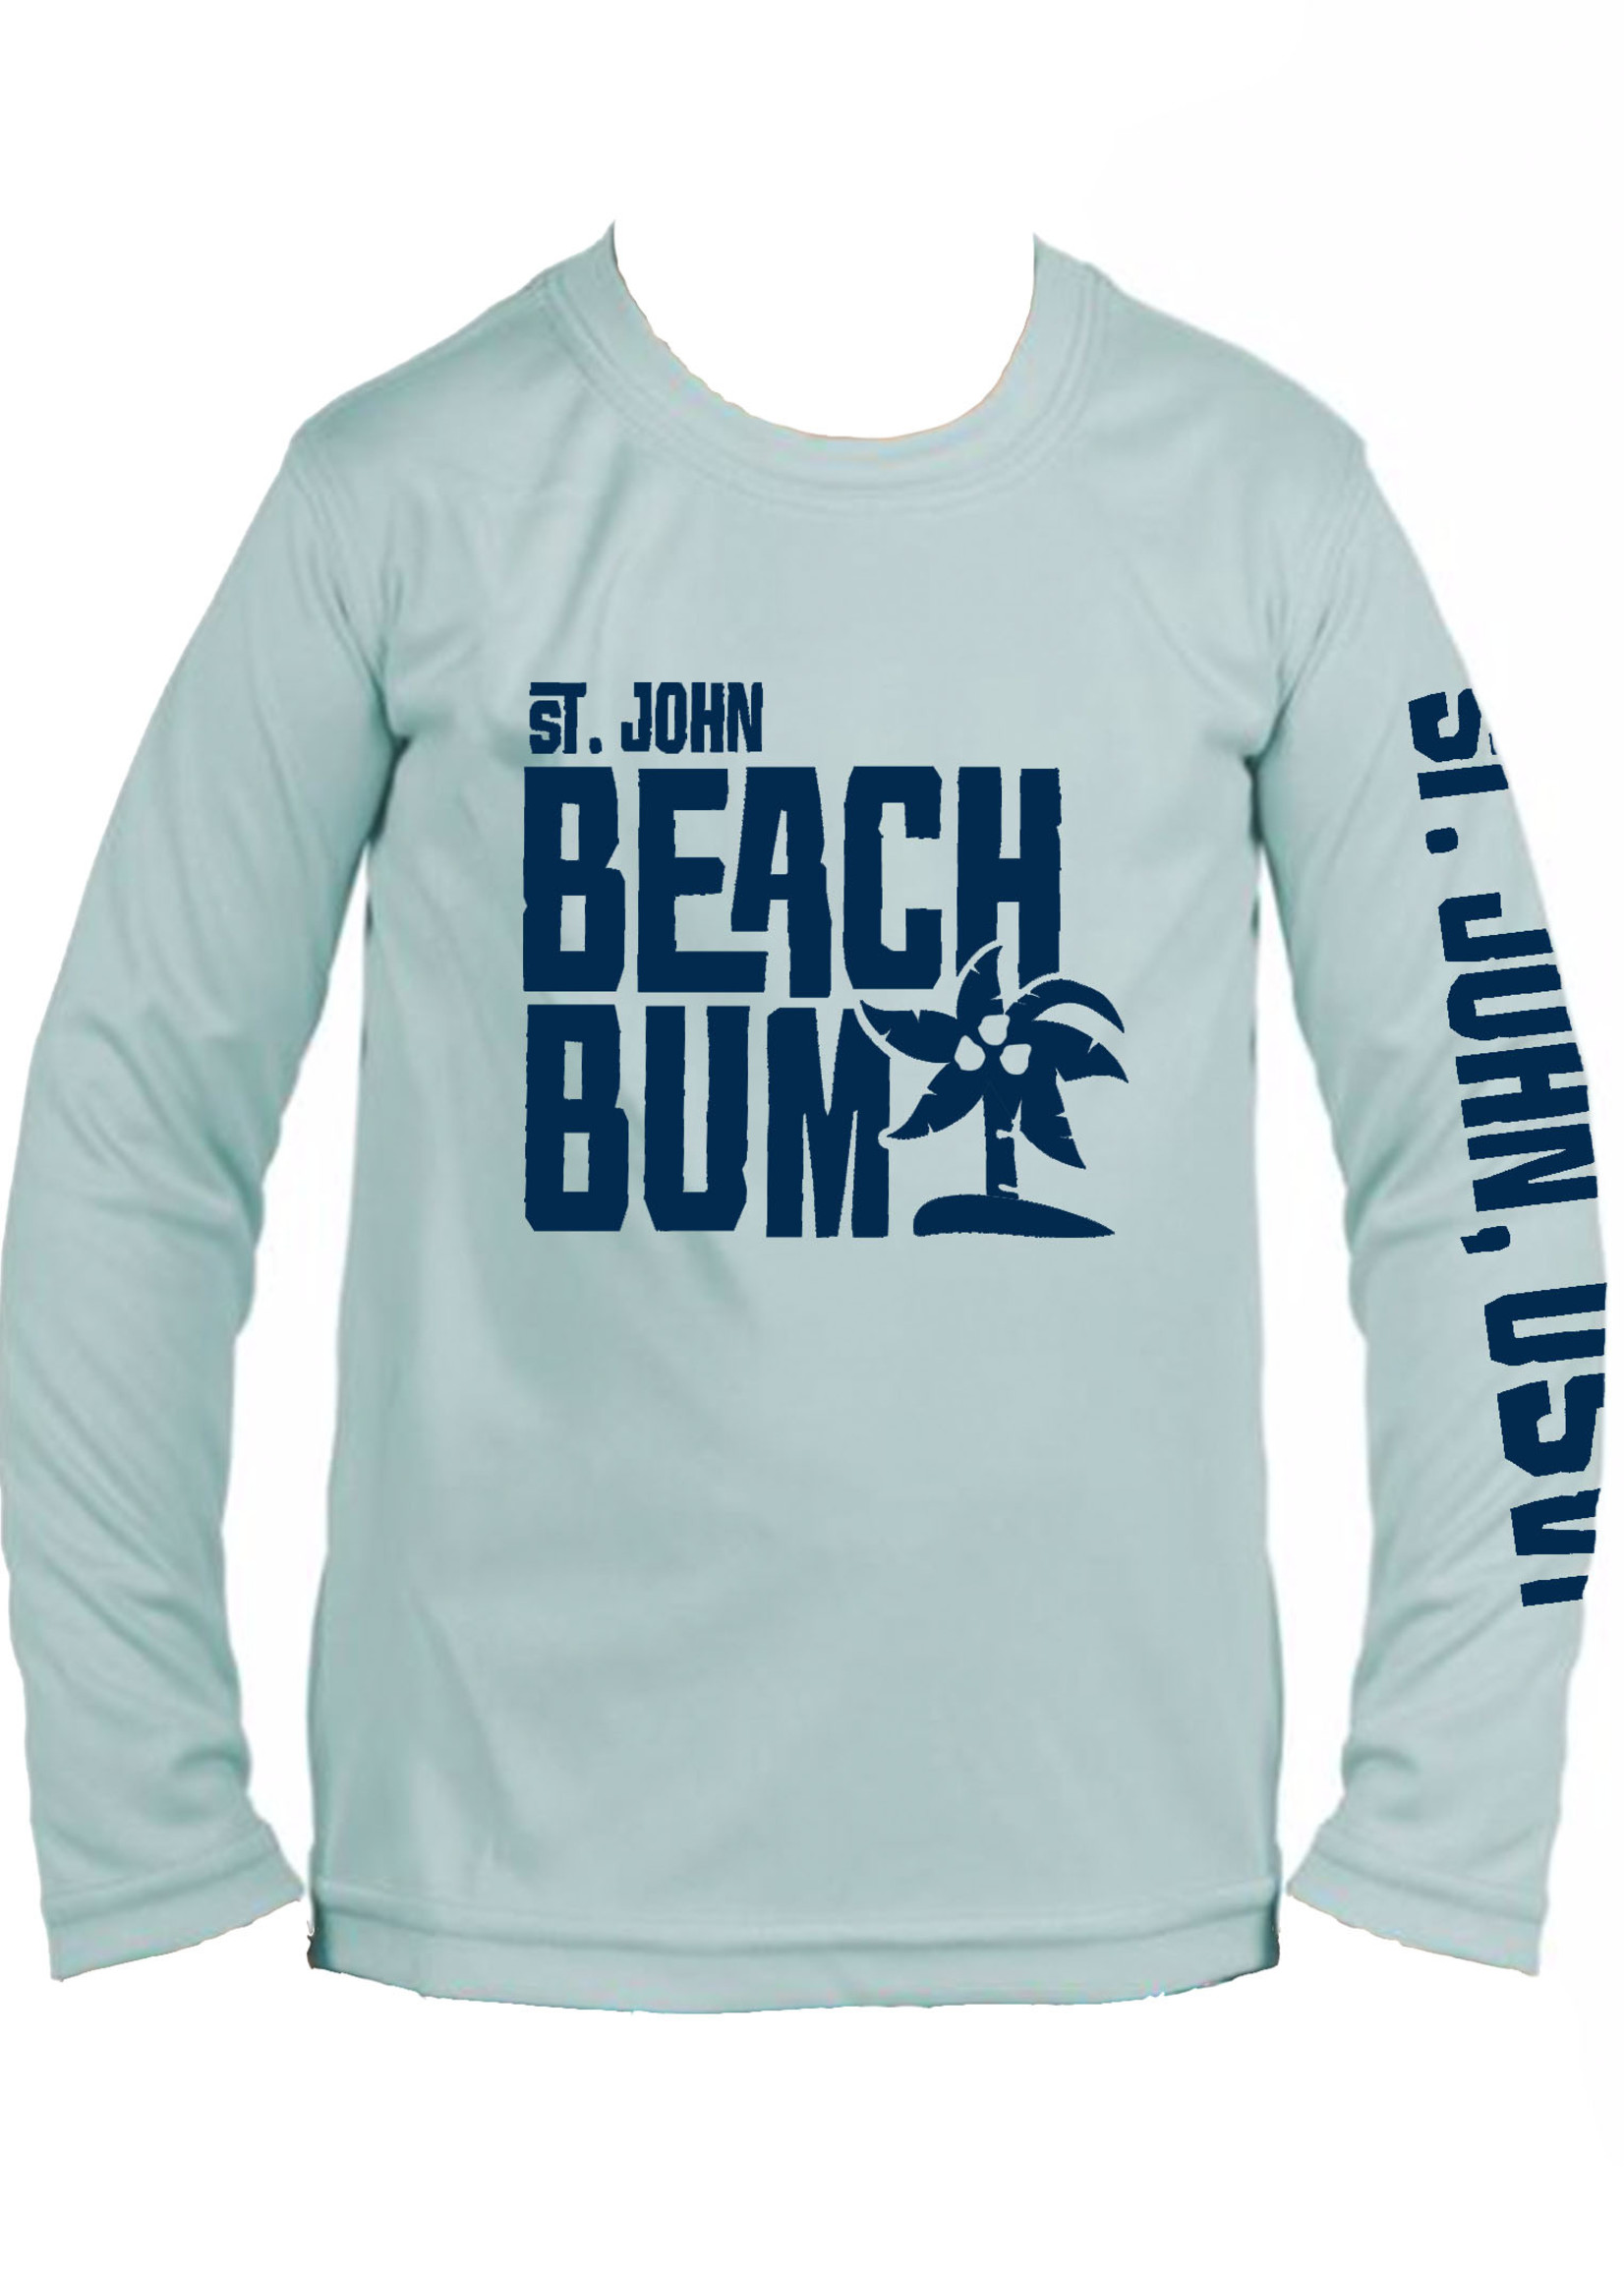 Beach Bum Toddler Rash Guard - Big Bum